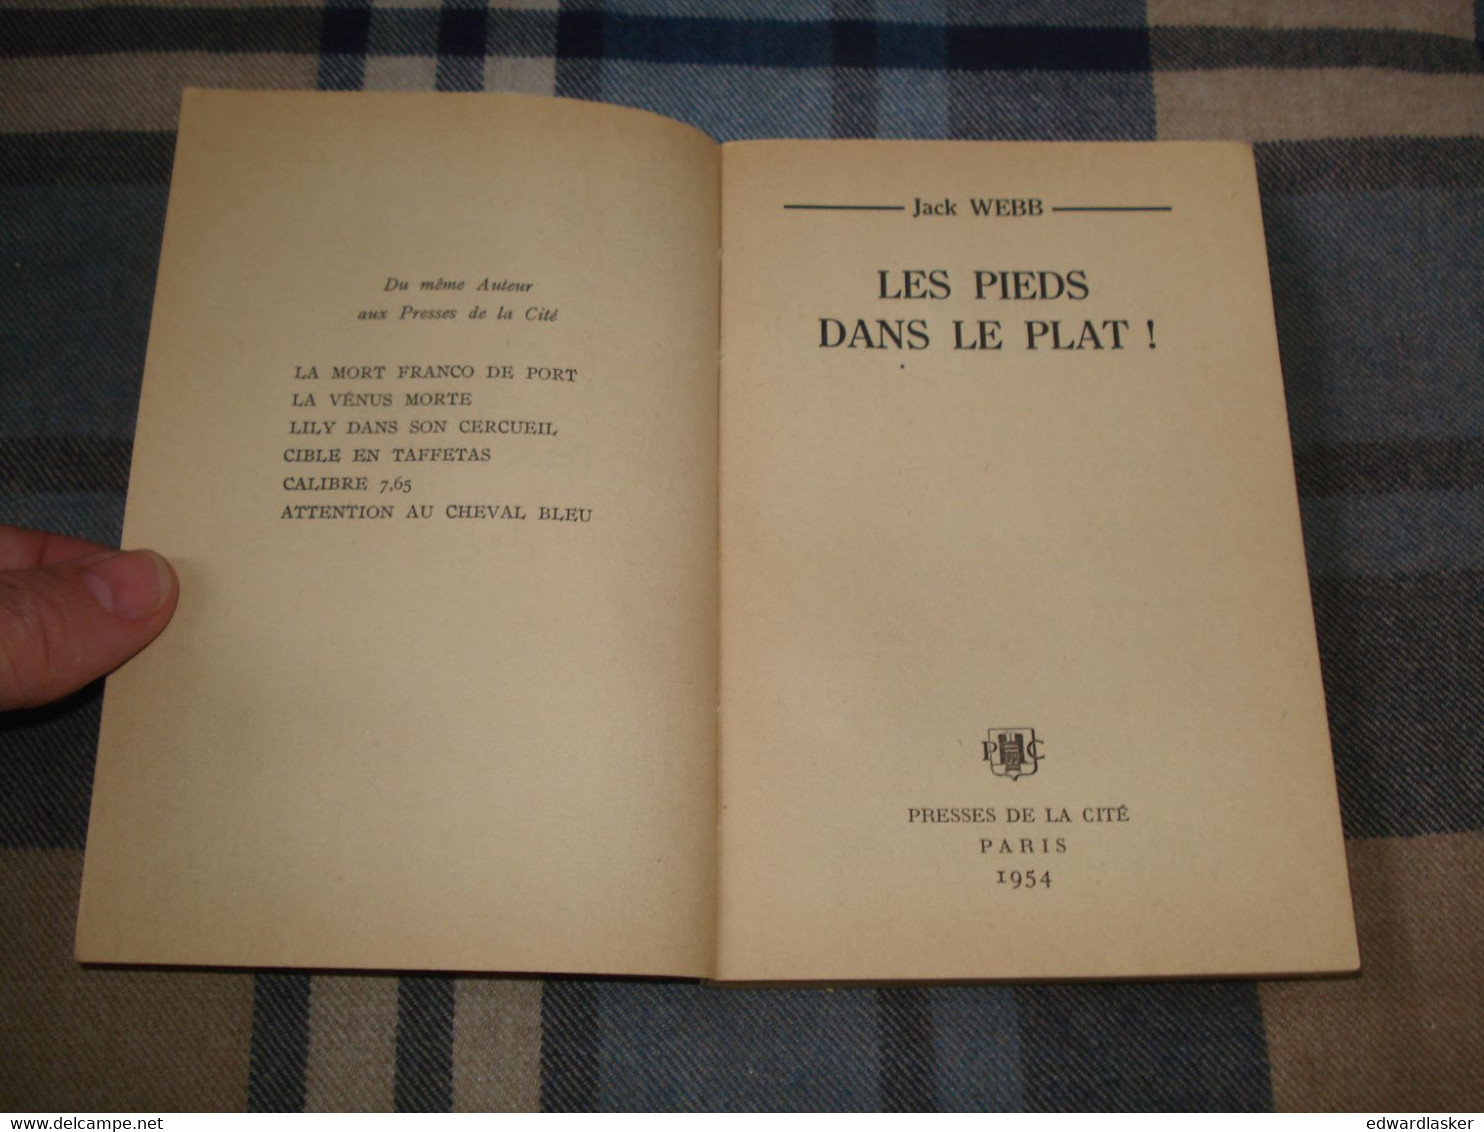 Un MYSTERE N°185 : Les PIEDS Dans Le PLAT /Jack Webb - Octobre 1954 - TBE [1] - Presses De La Cité